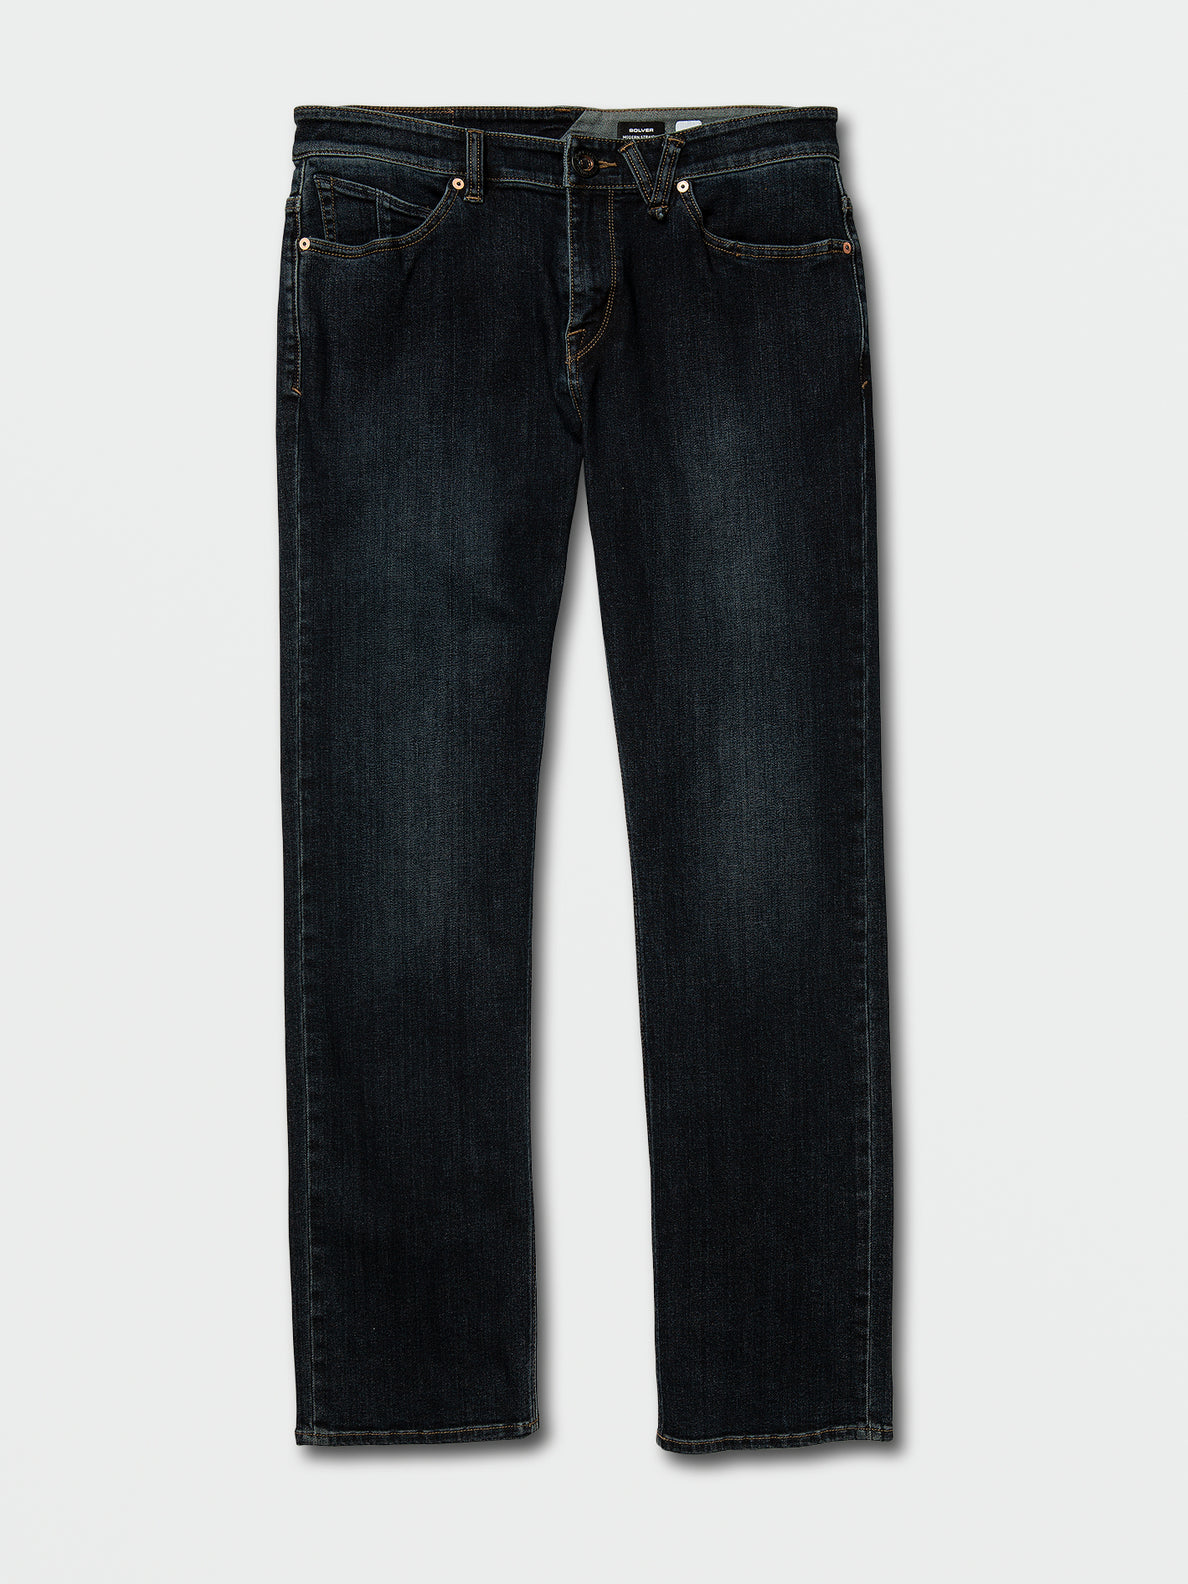 VOLCOM-Solver Jeans-VINTAGE BLUE